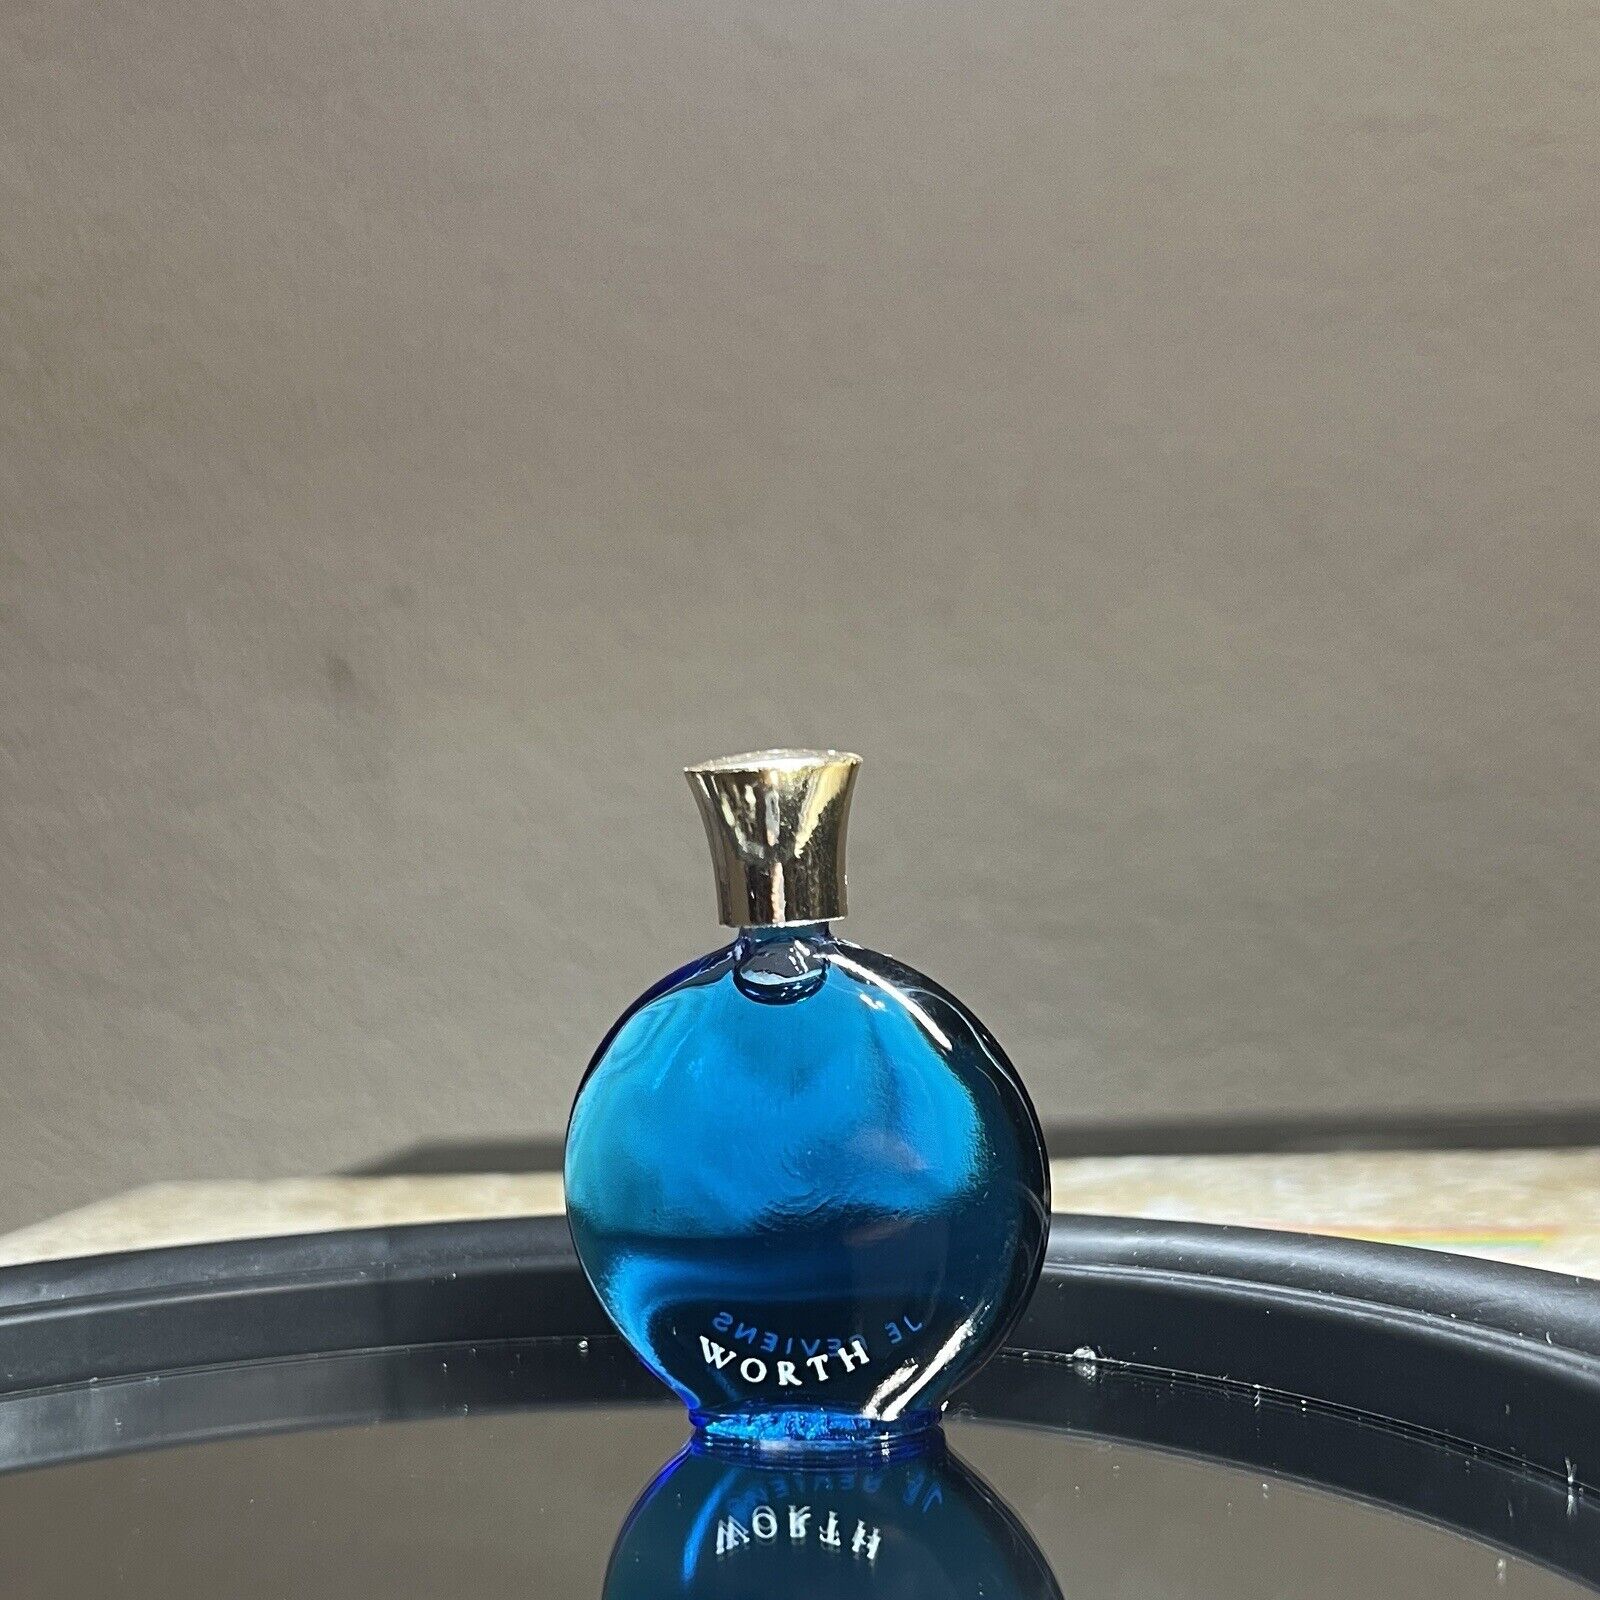 Worth Vintage Collectible Miniature Blue Glass Bottle Je Reviens 2.25”